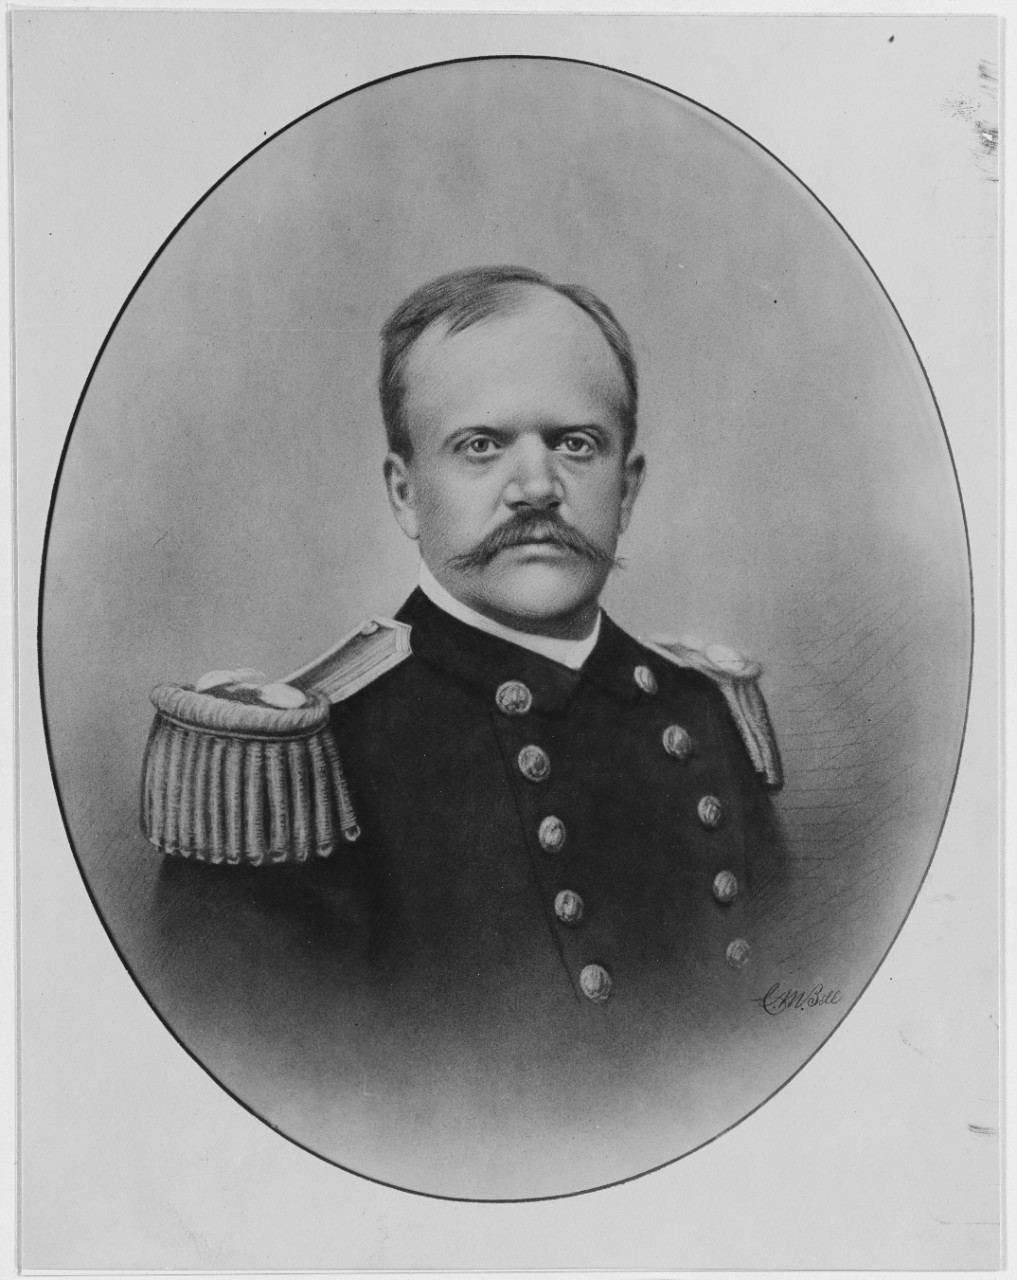 Commander William M. Folger, USN